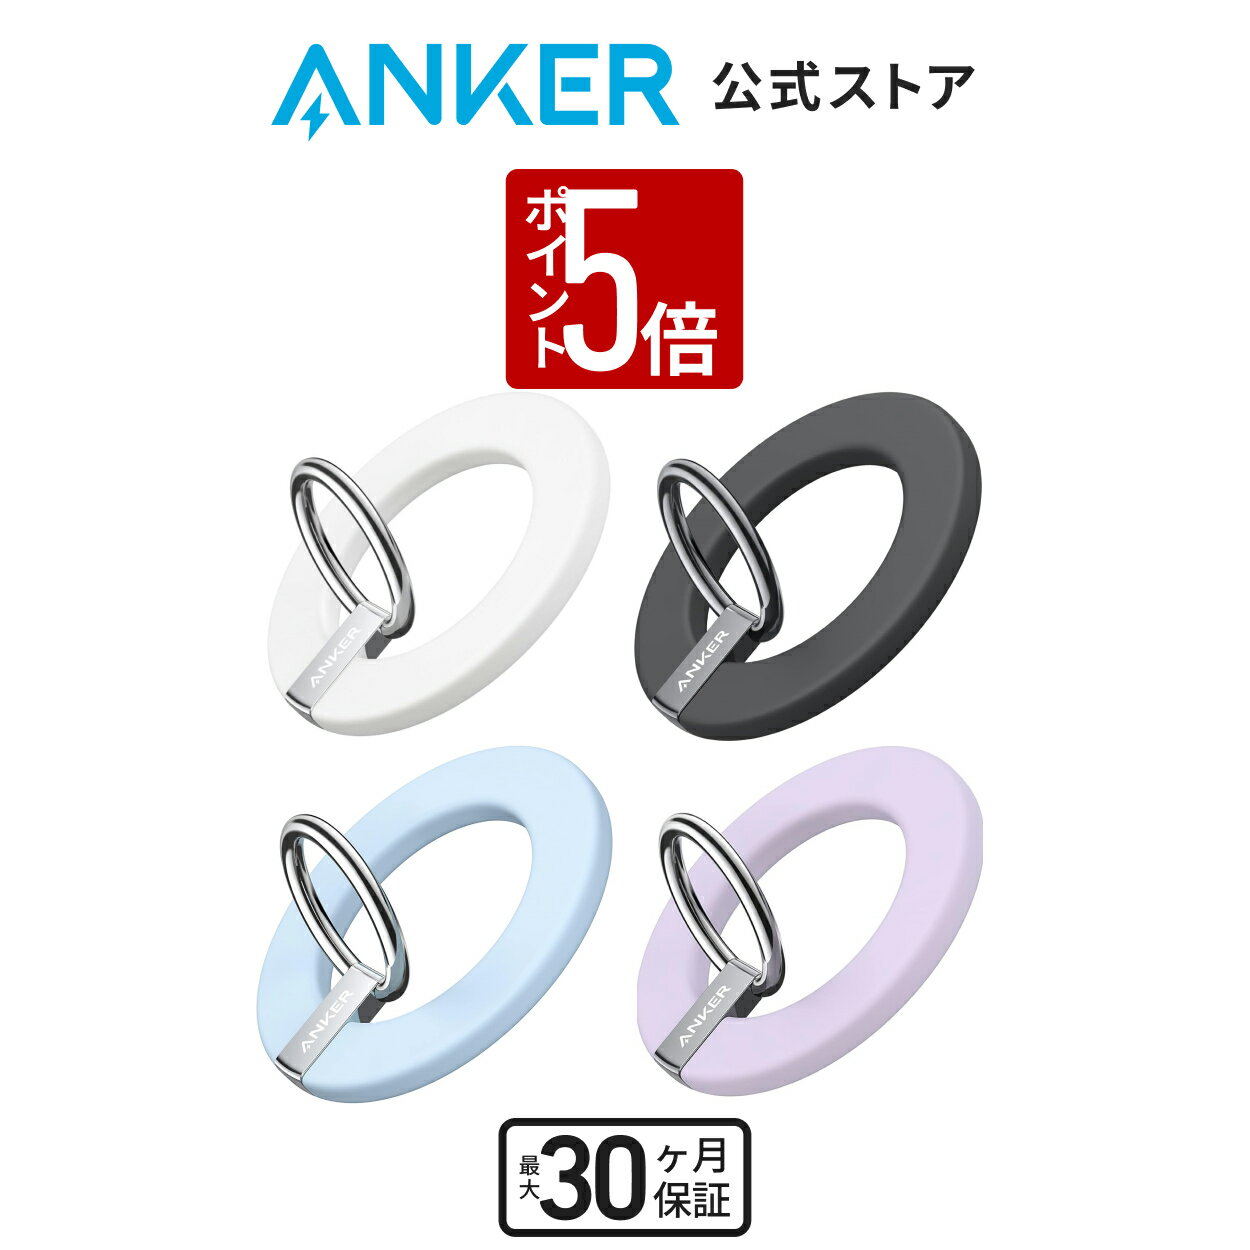 【310円OFF 5/16まで】【P10倍 5/1~5/15】【一部あす楽対応】Anker 610 Magnetic Phone Grip (MagGo) (マグ...